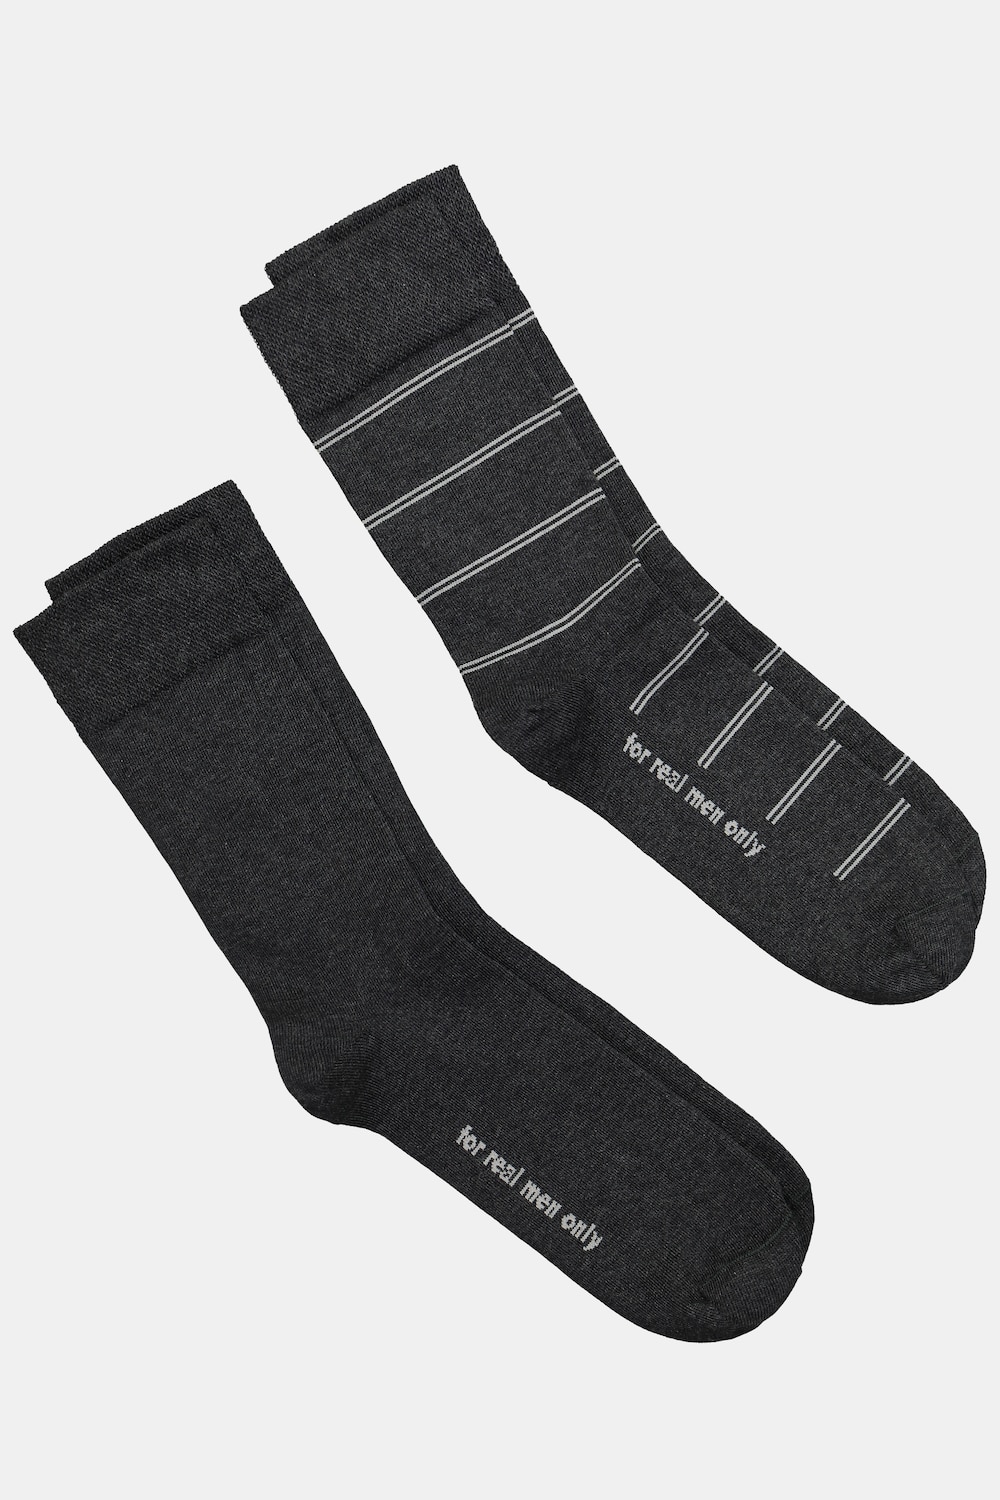 Große Größen JP1880 Socken, Herren, grau, Größe: 39-42, Baumwolle/Synthetische Fasern, JP1880 von JP1880